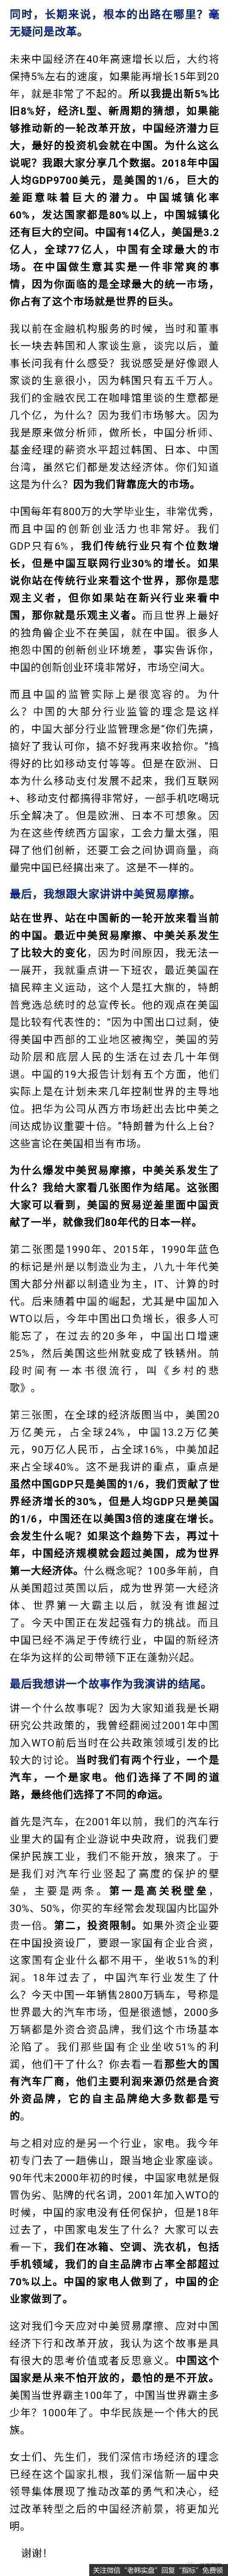 任泽平股市最新相关消息：短期经济形势严峻 中长期最好投资机会在中国3